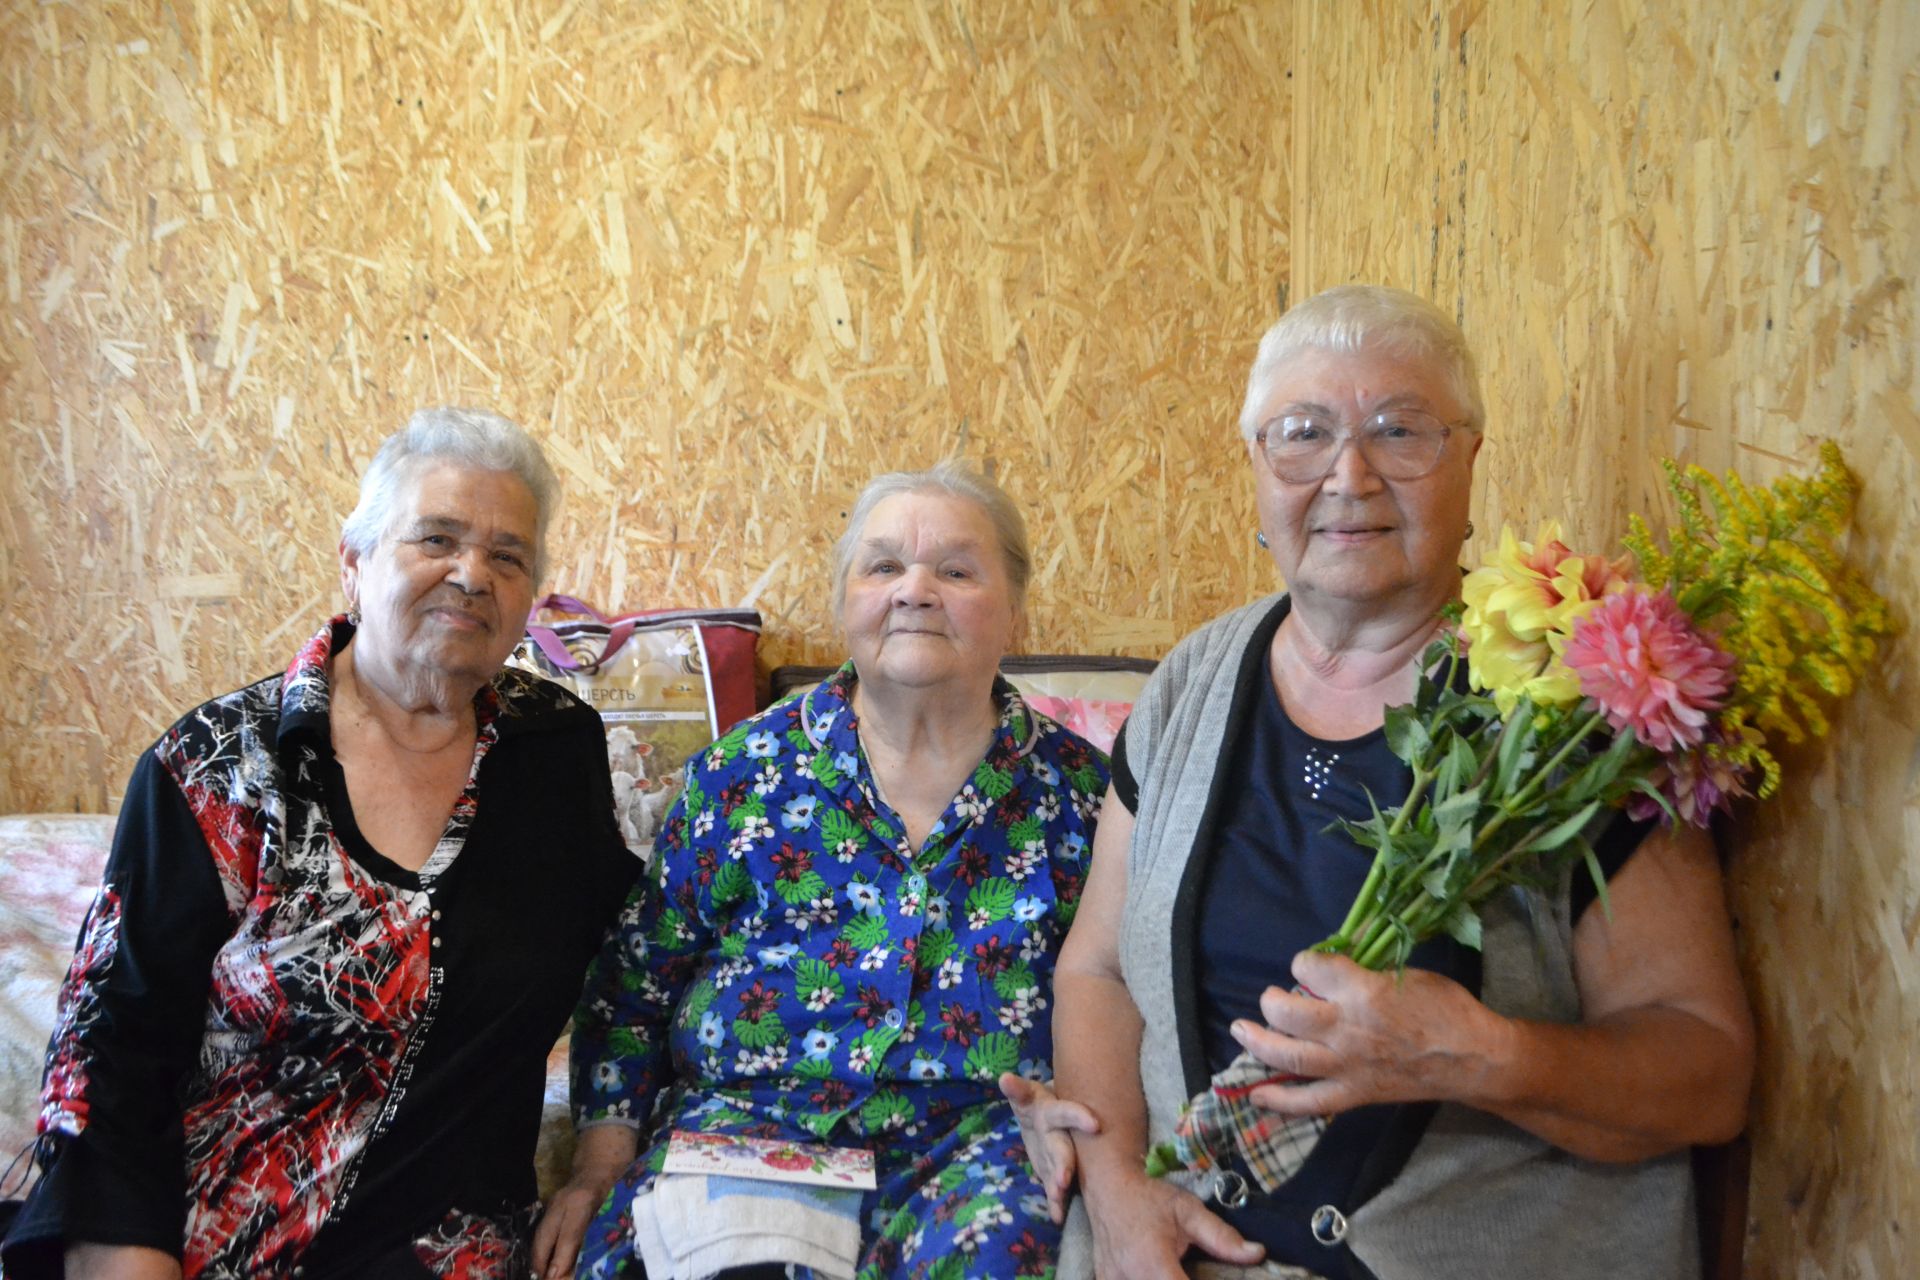 Любовь Фирсова из Нижнего Услона отметила красивый юбилей - 90 лет!